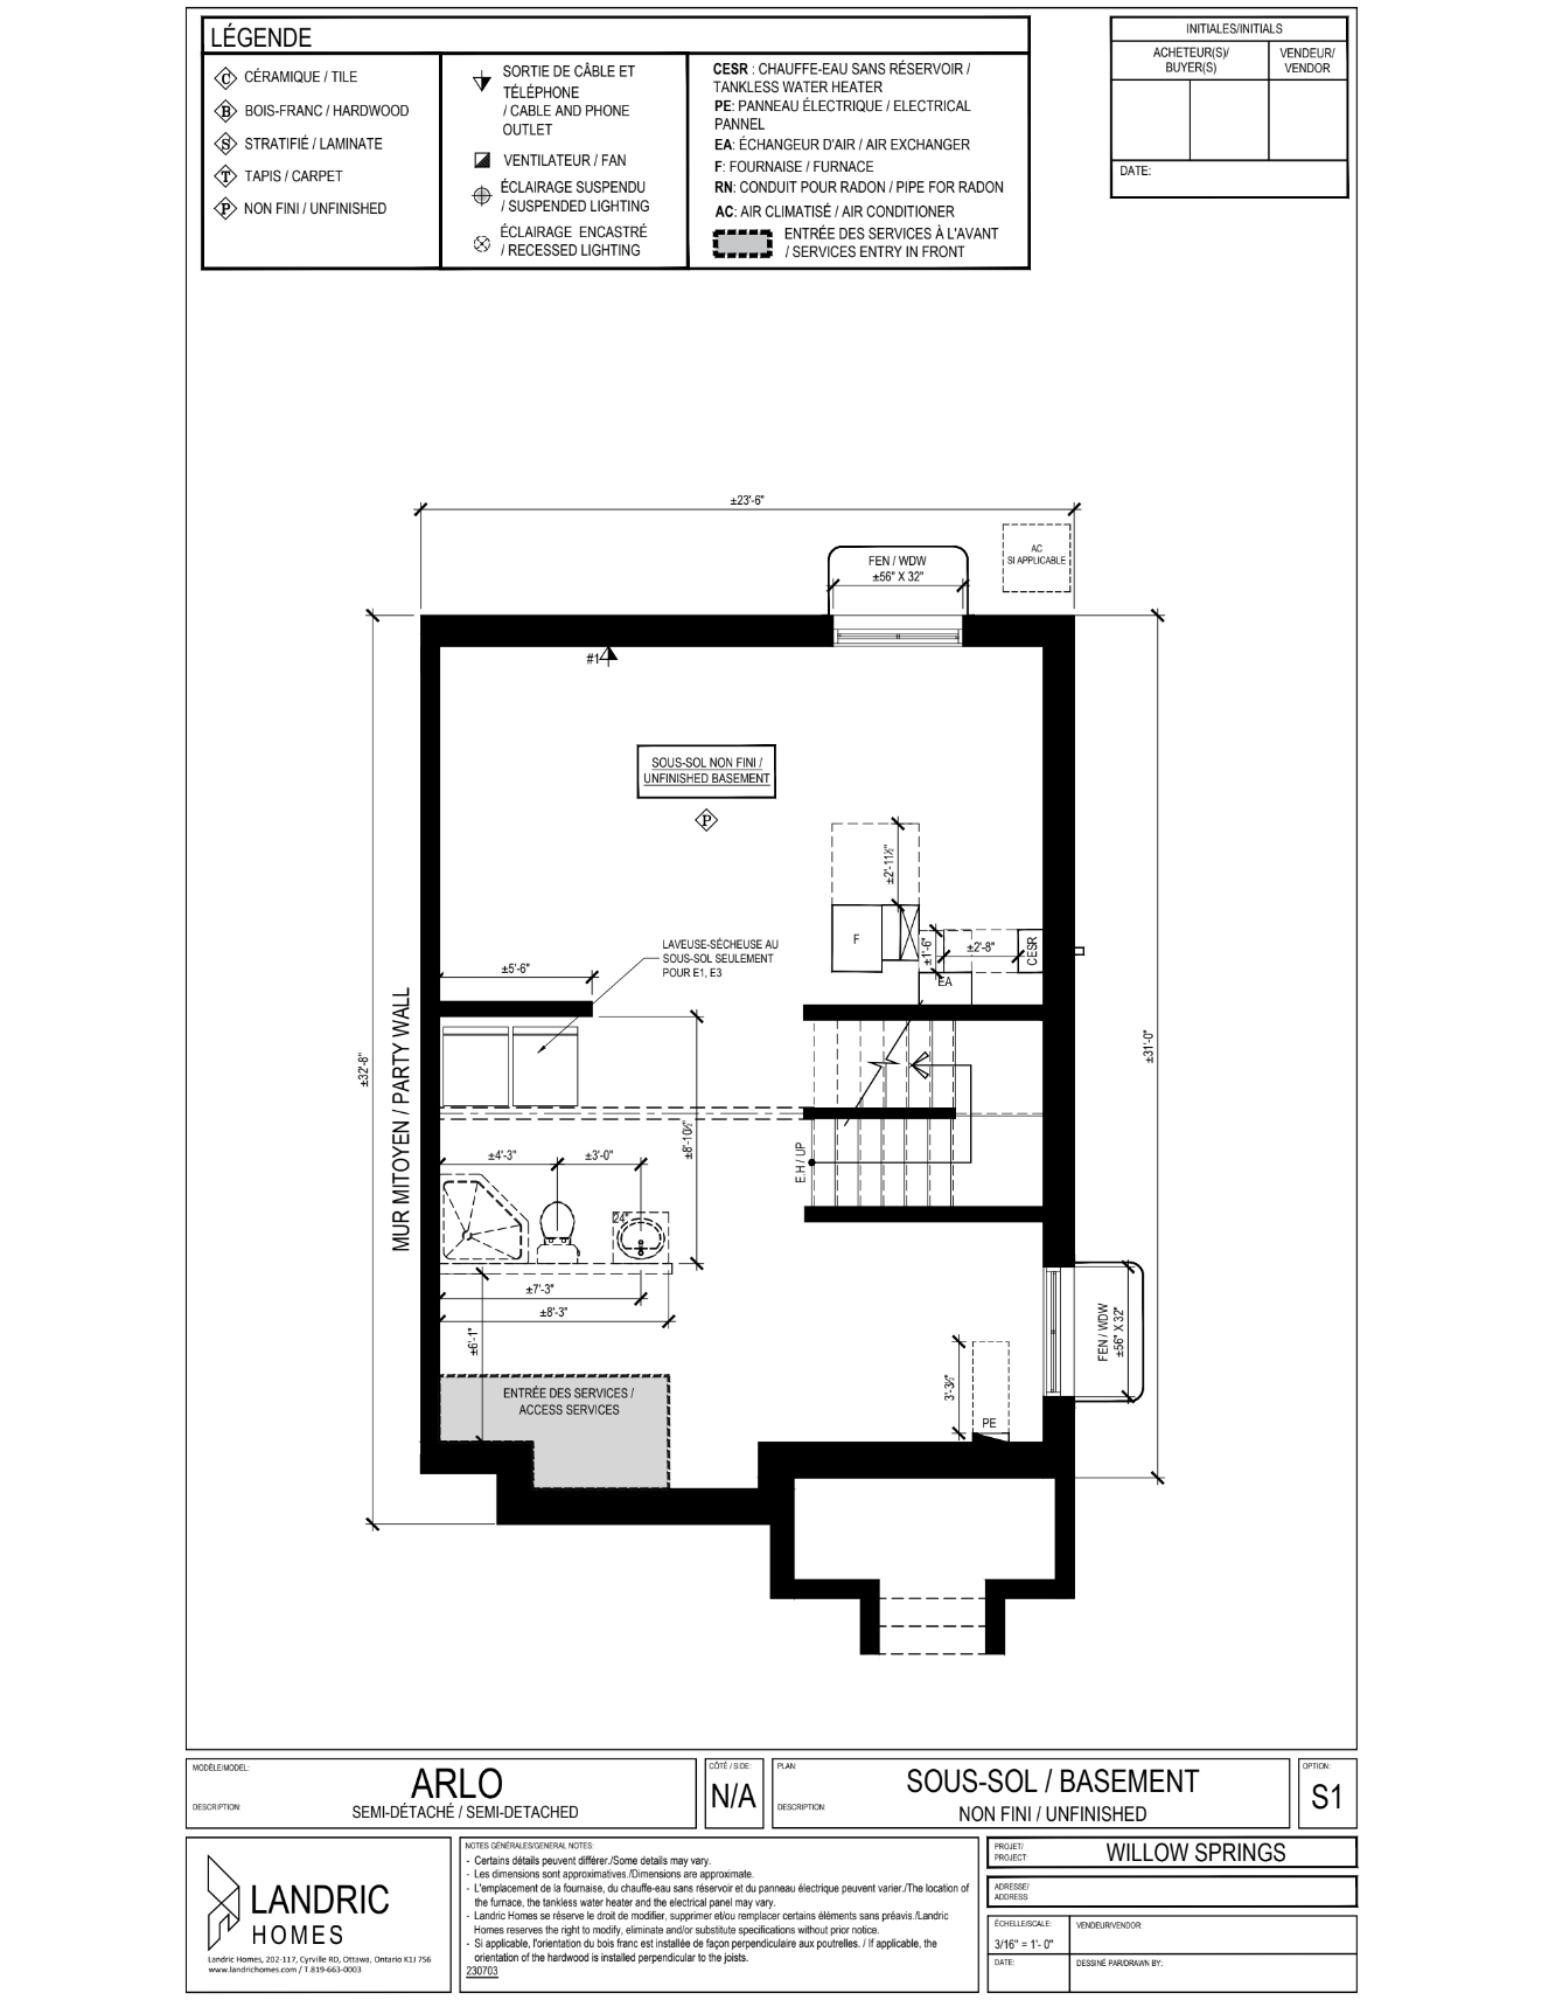 Willow Springs, Limoges floor plans (9)